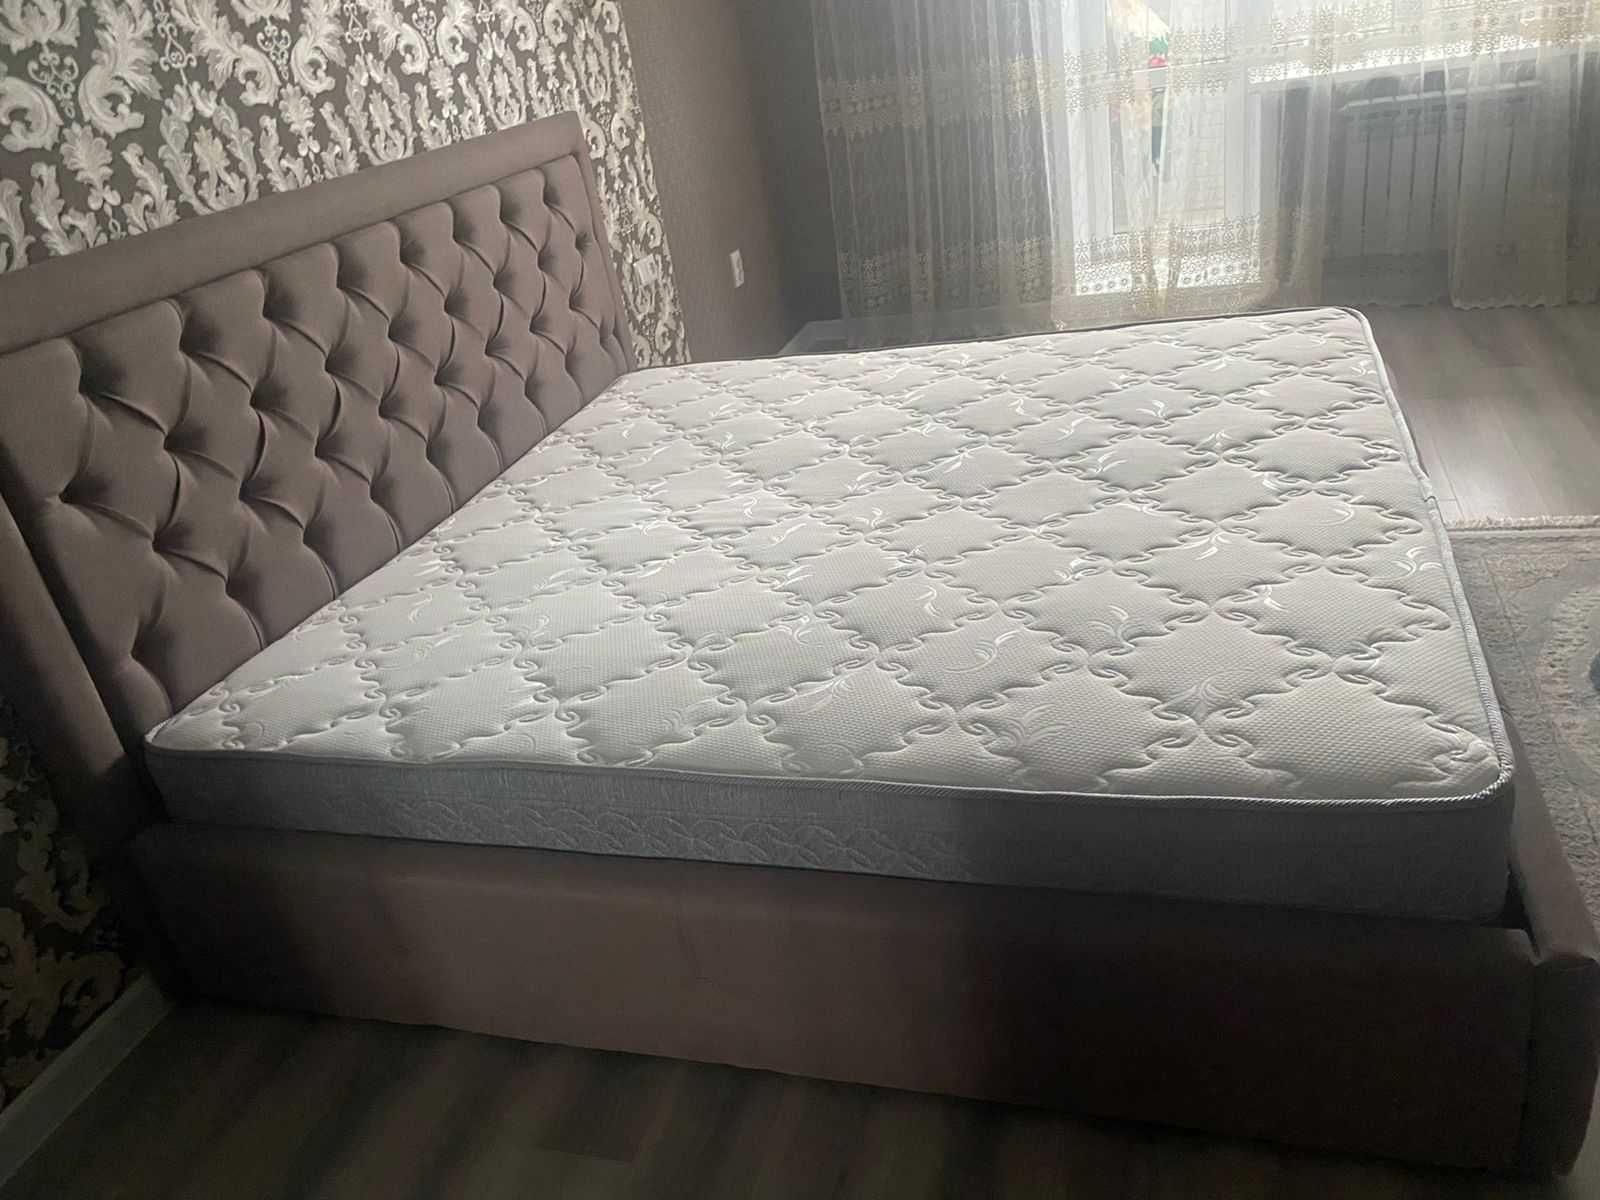 Продается 2 - х спальная кровать